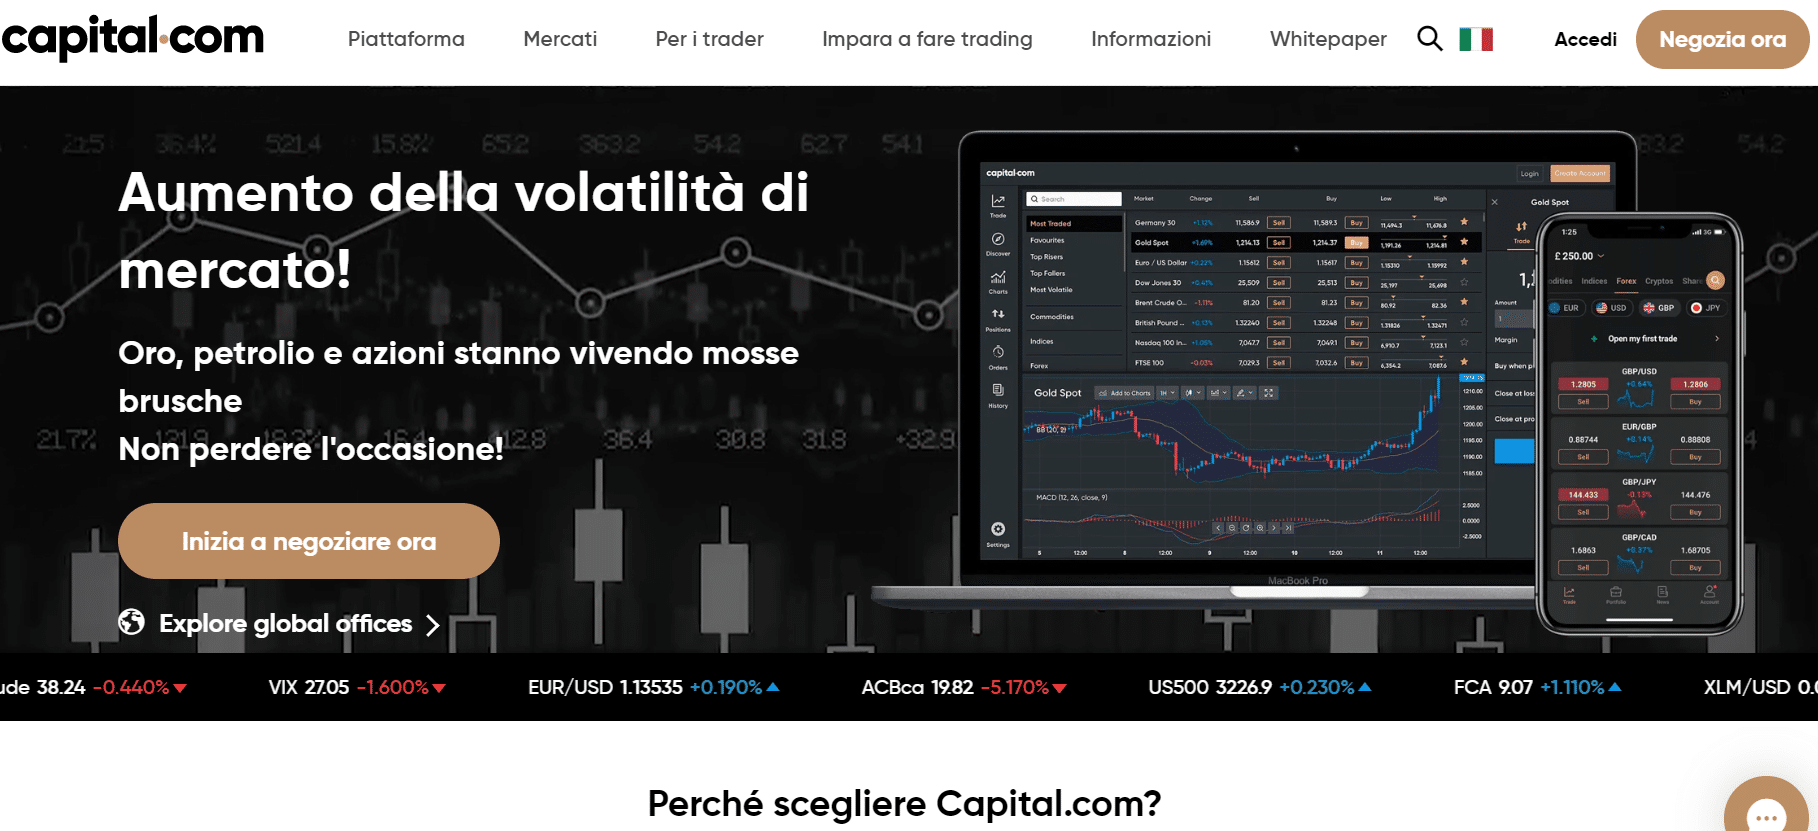 segnali trading Capital.com